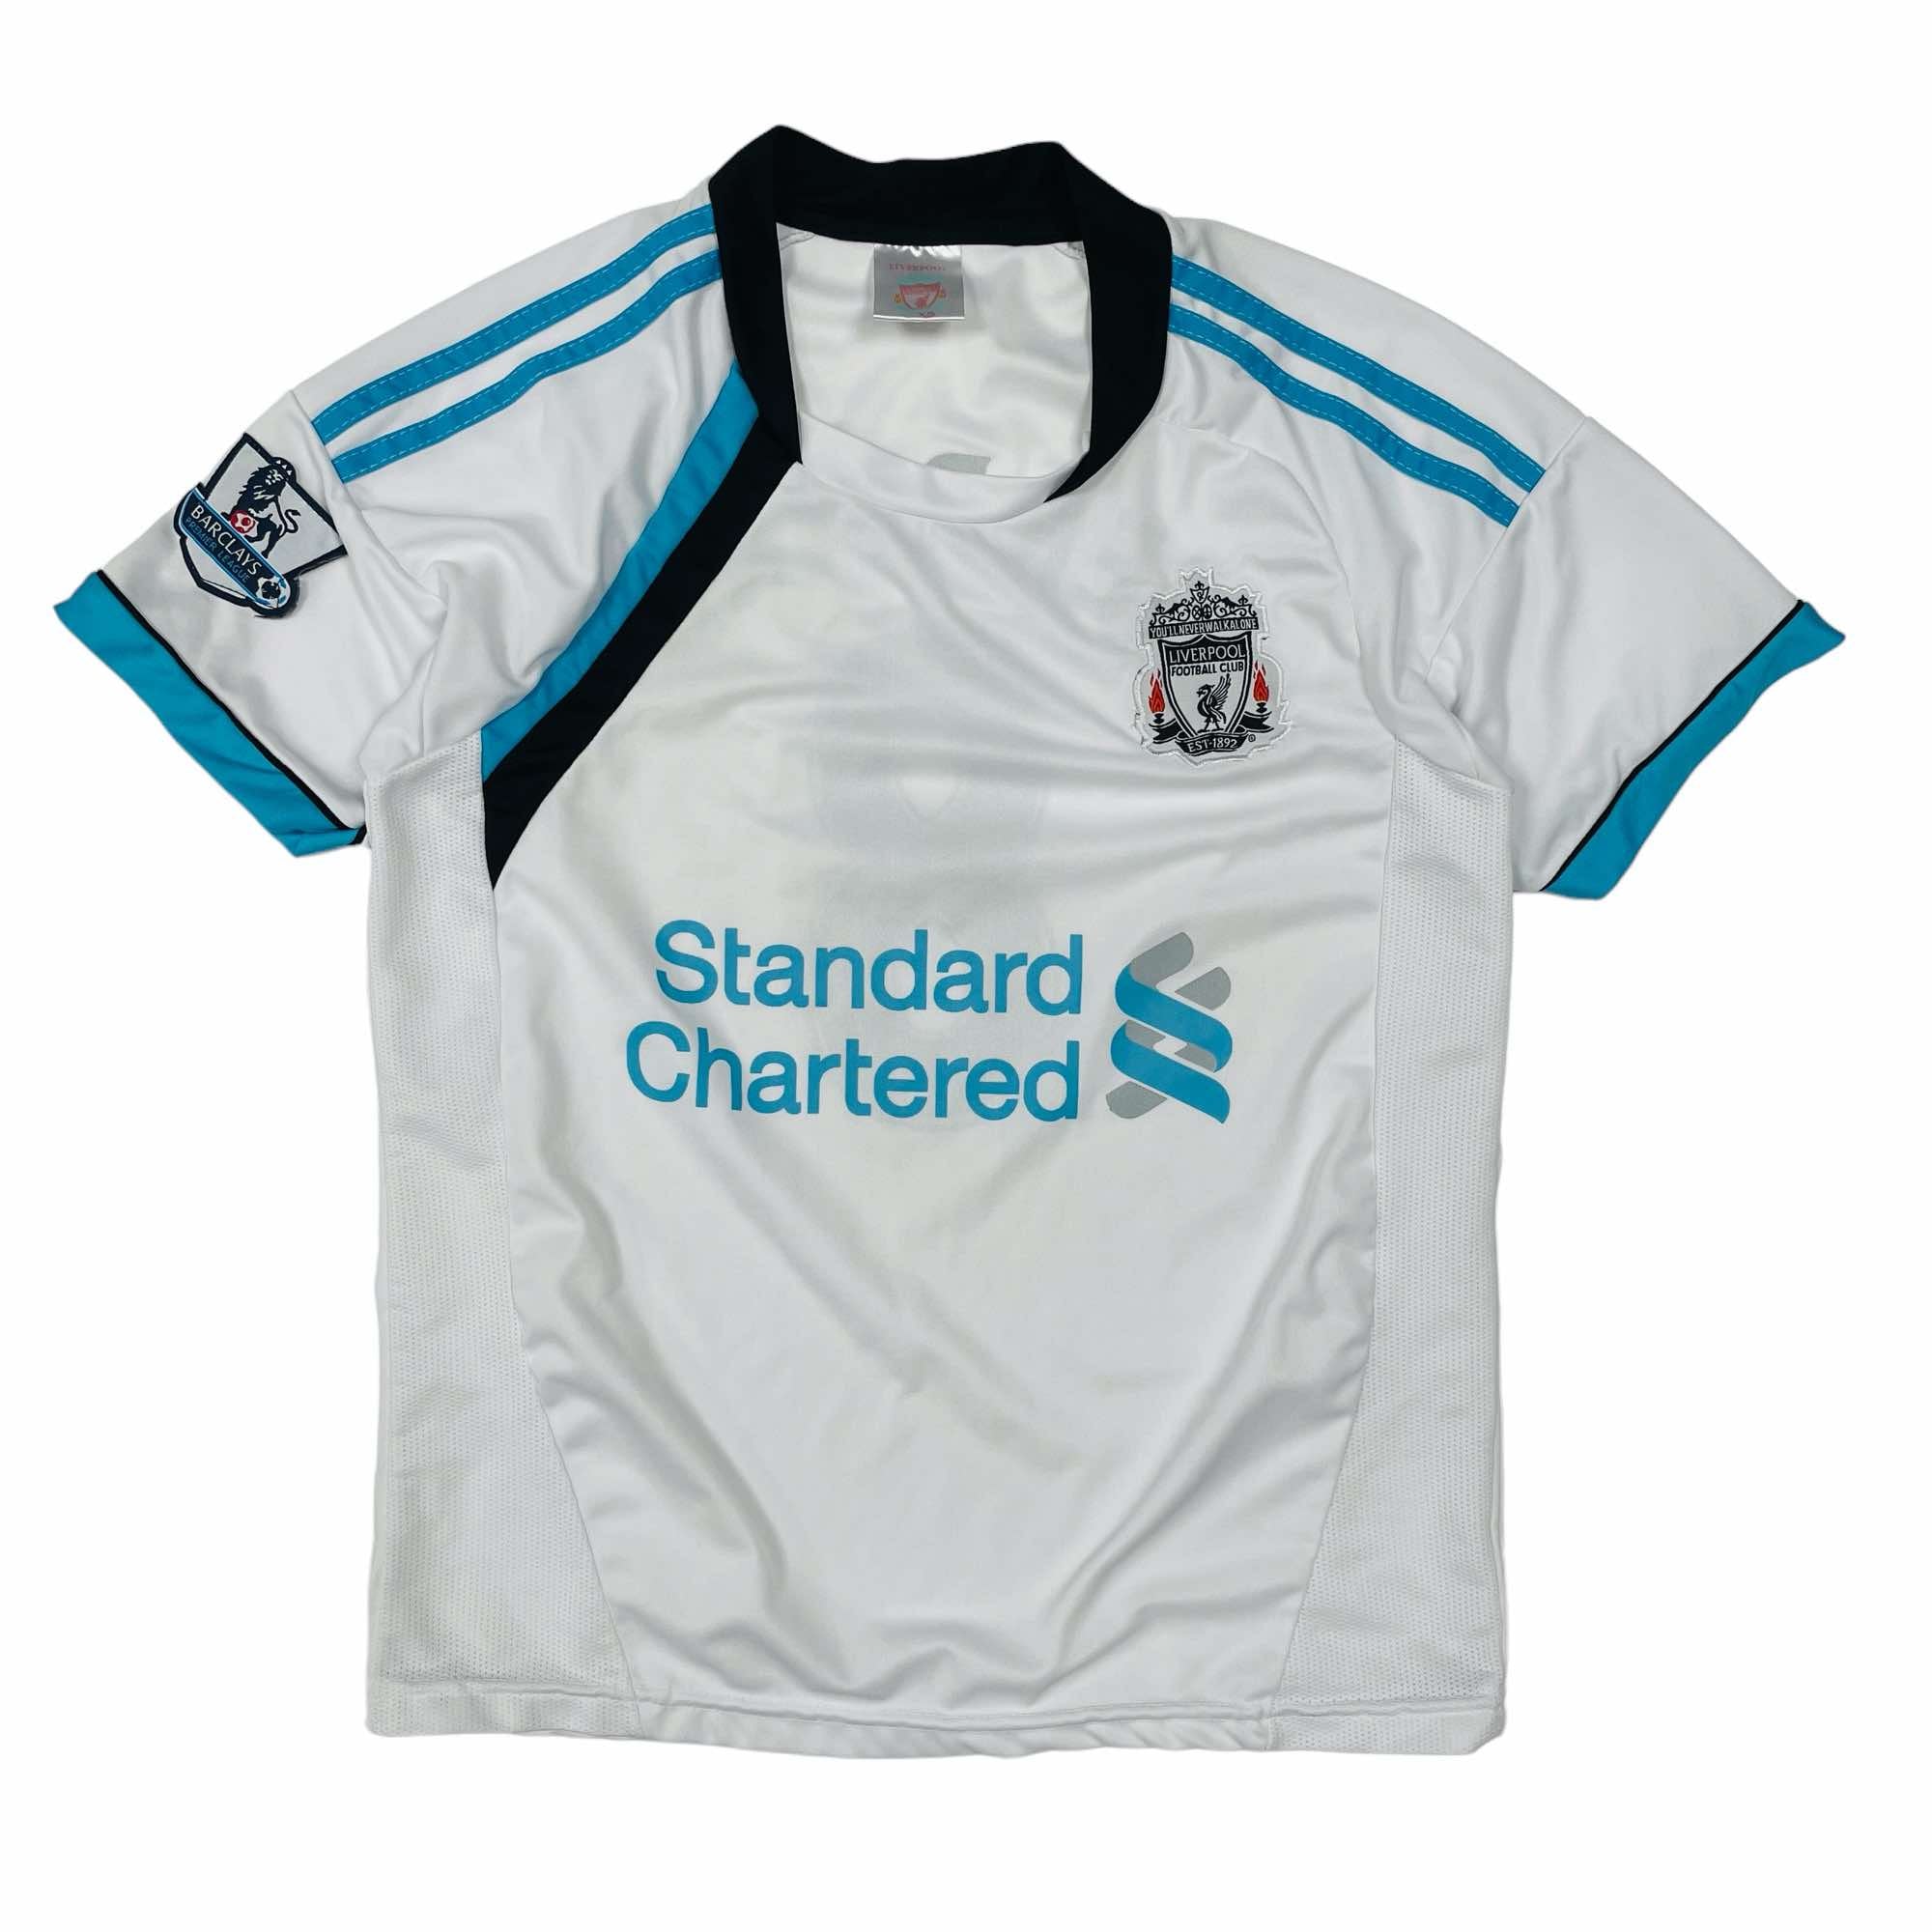 Liverpool 2011/12 Steven Gerrard Shirt - Small